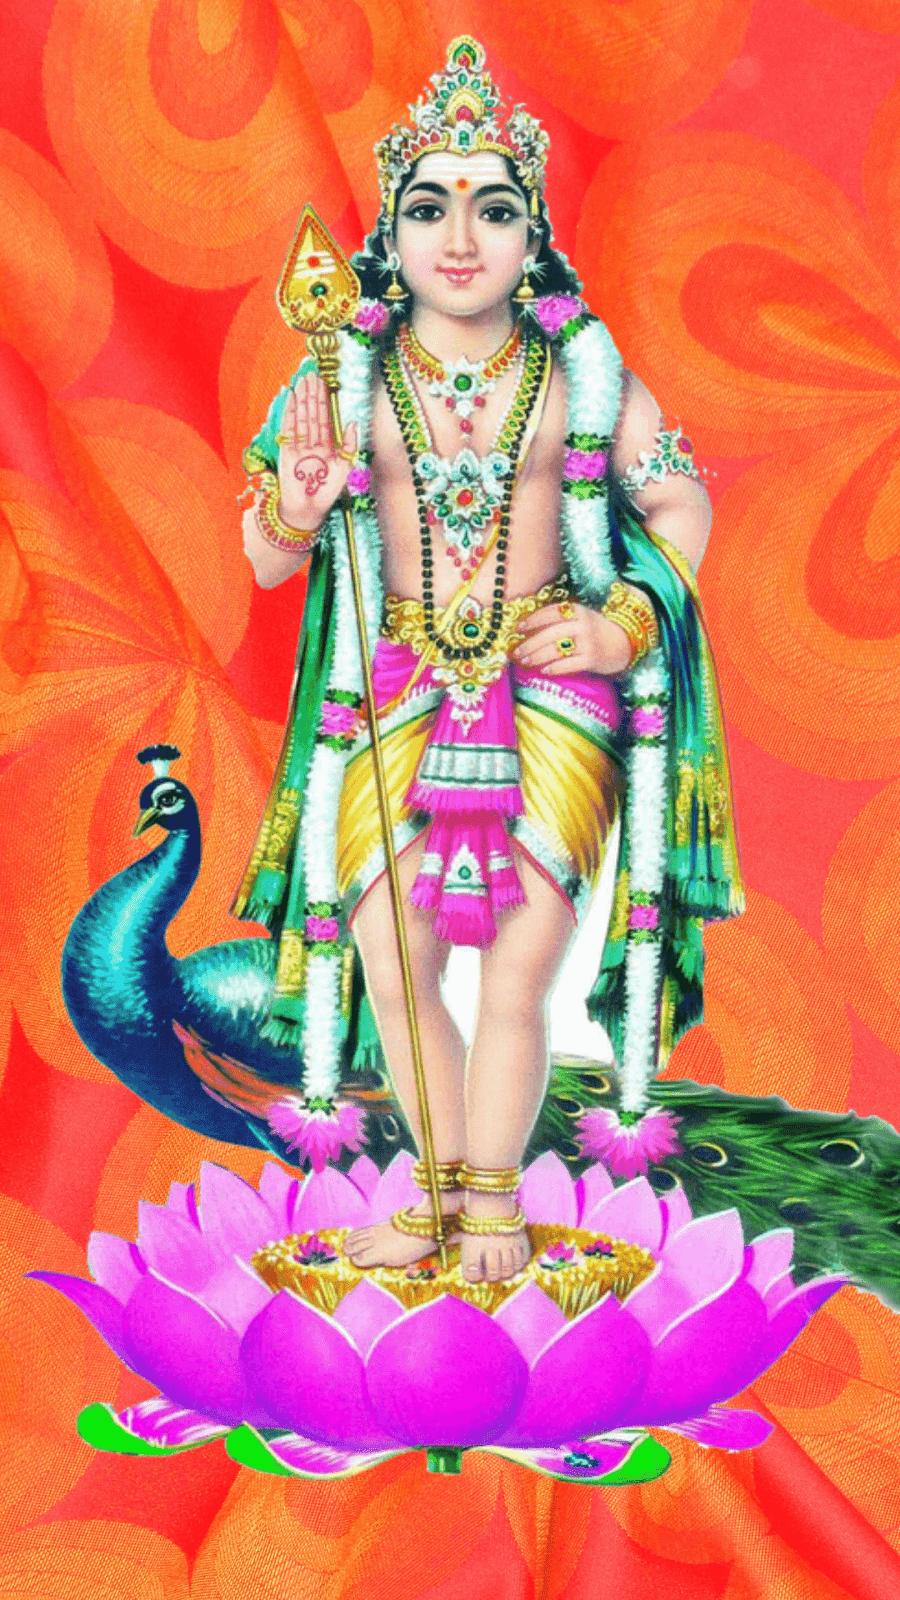 Murugan Images - Murugan God Images Png - 900x1600 Wallpaper 